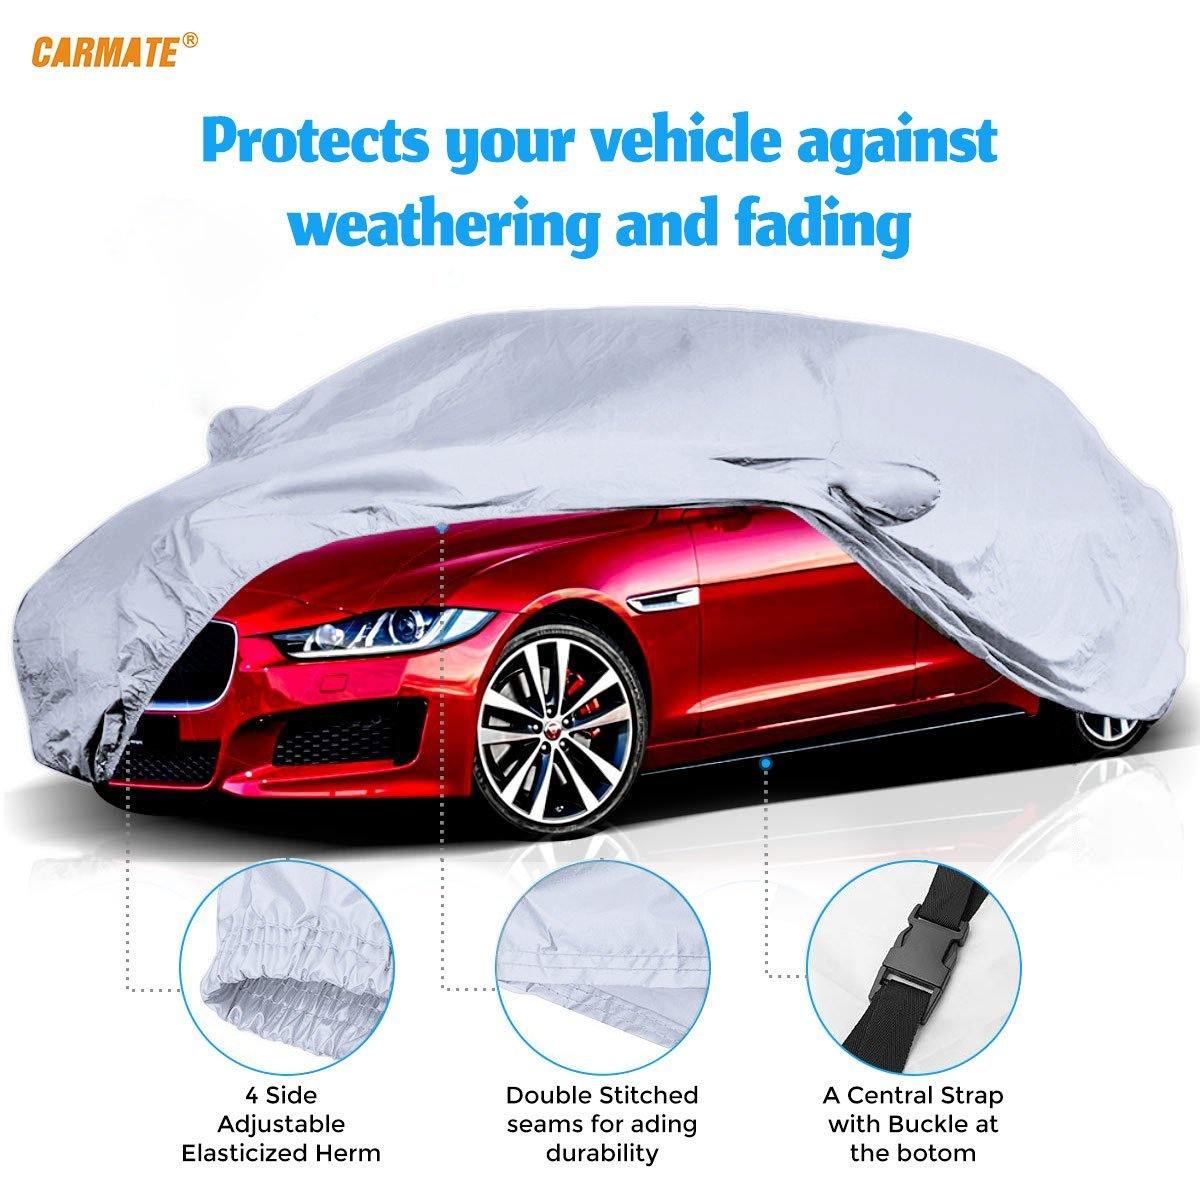 Carmate Premium Car Body Cover Silver Matty (Silver) for  Tata - Zest - CARMATE®